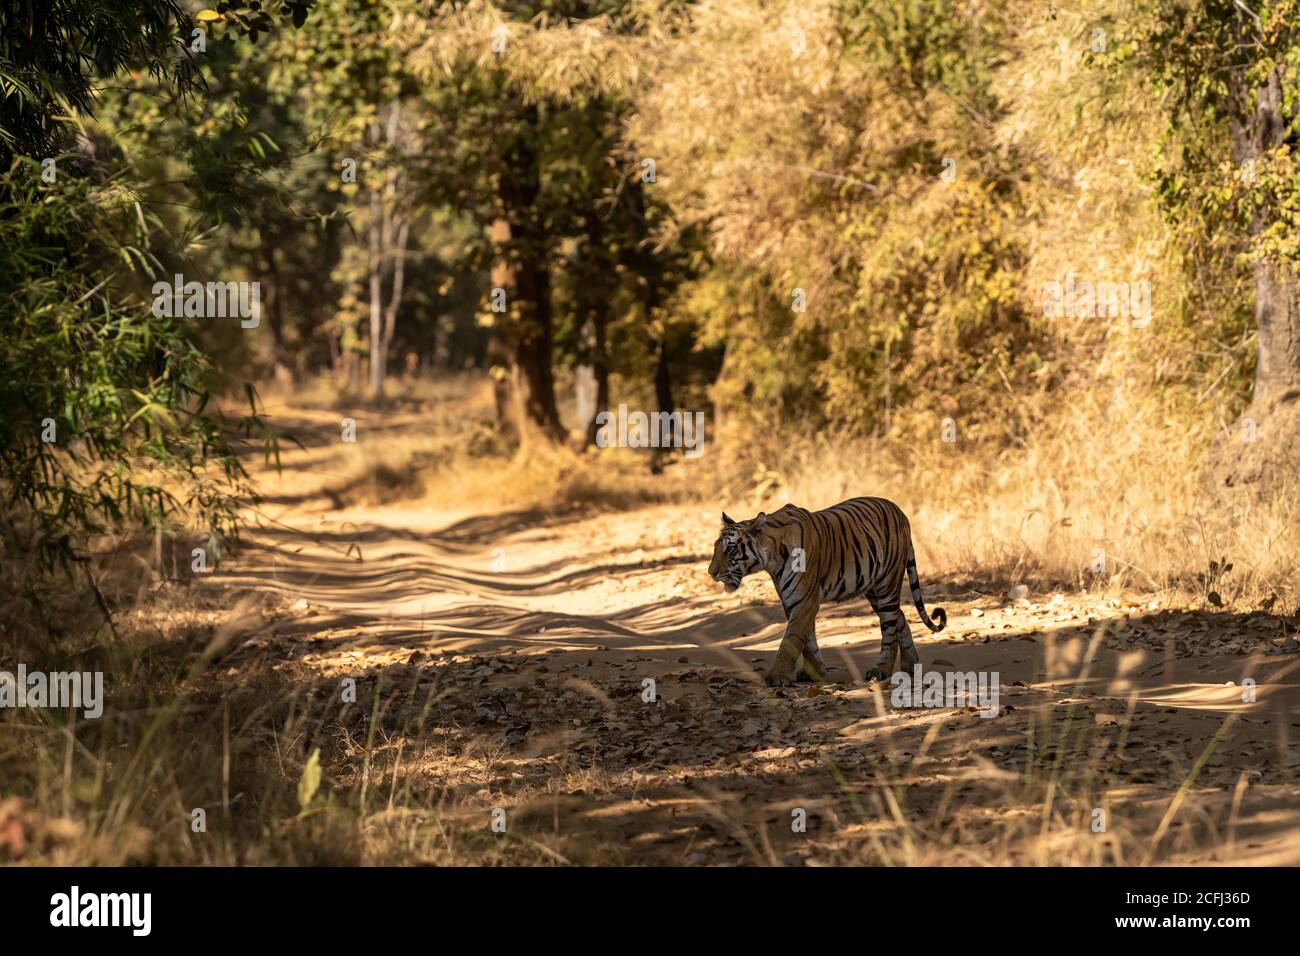 mujer tigre salvaje en paseo nocturno. Caminaba en su territorio y cruzaba la pista de safari en el bosque en el parque nacional bandhavgarh o reserva de tigre Foto de stock